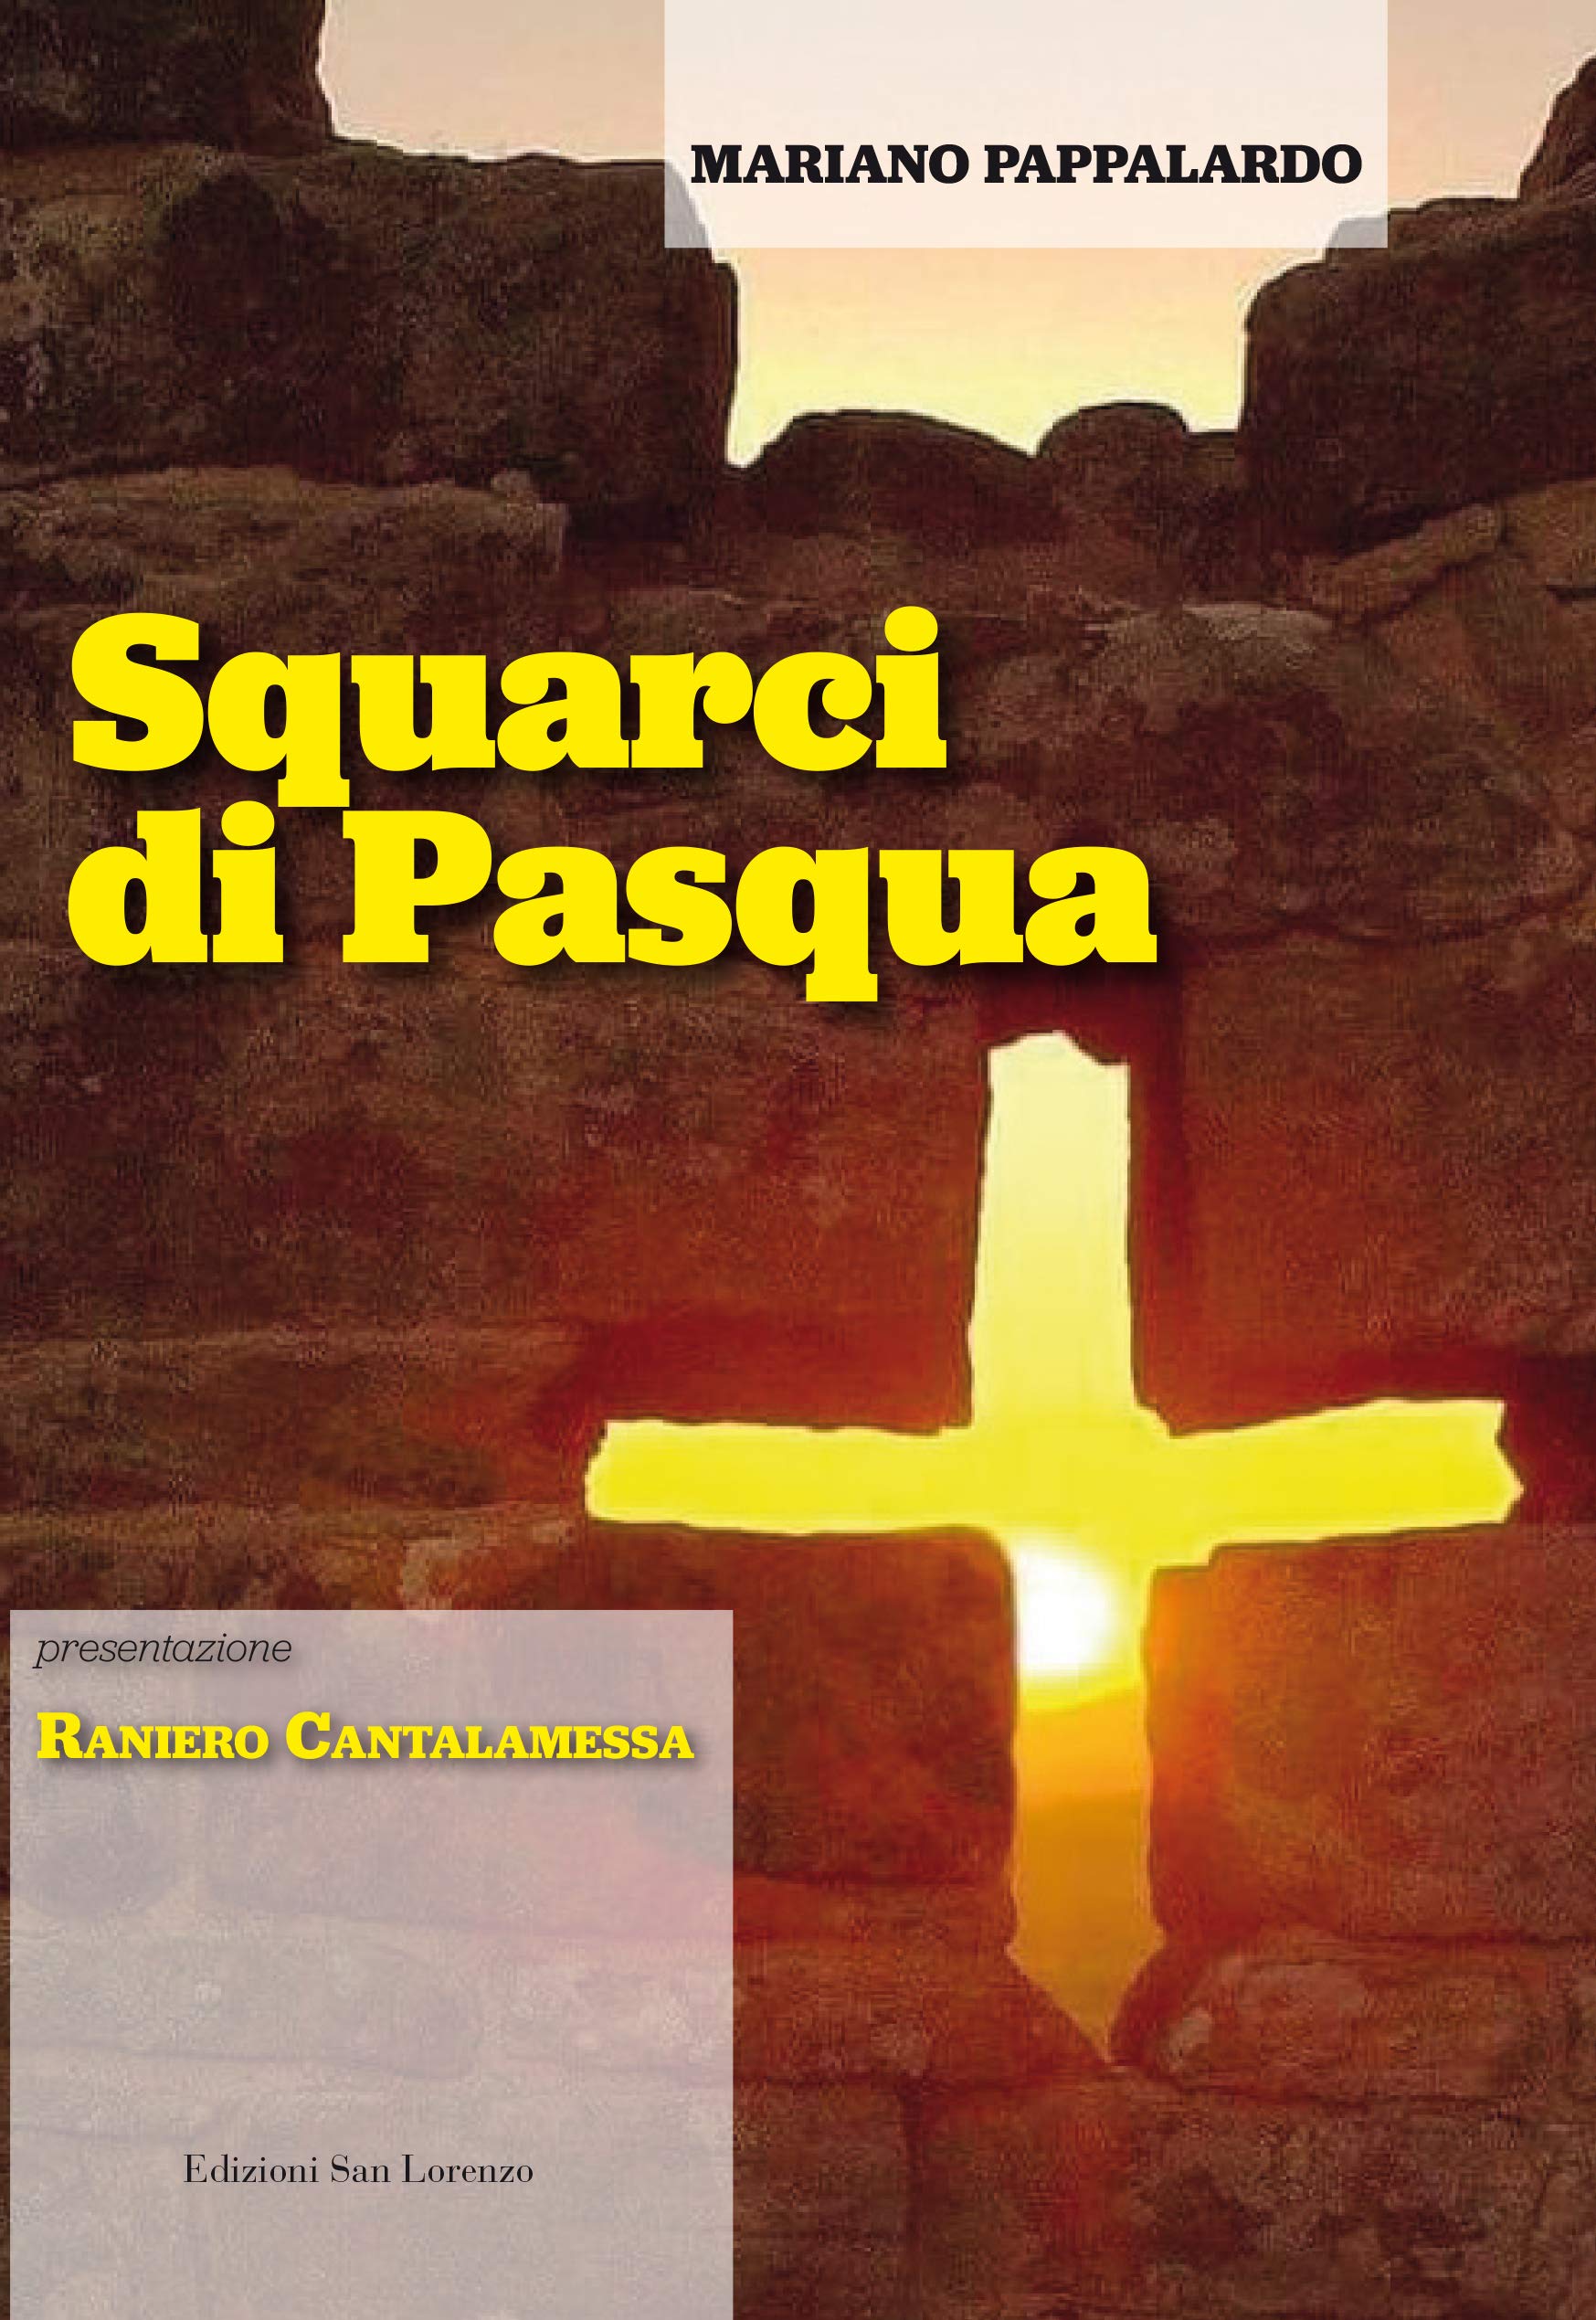 LibrINchiostro / Mariano Pappalardo presenta “Squarci di Pasqua”